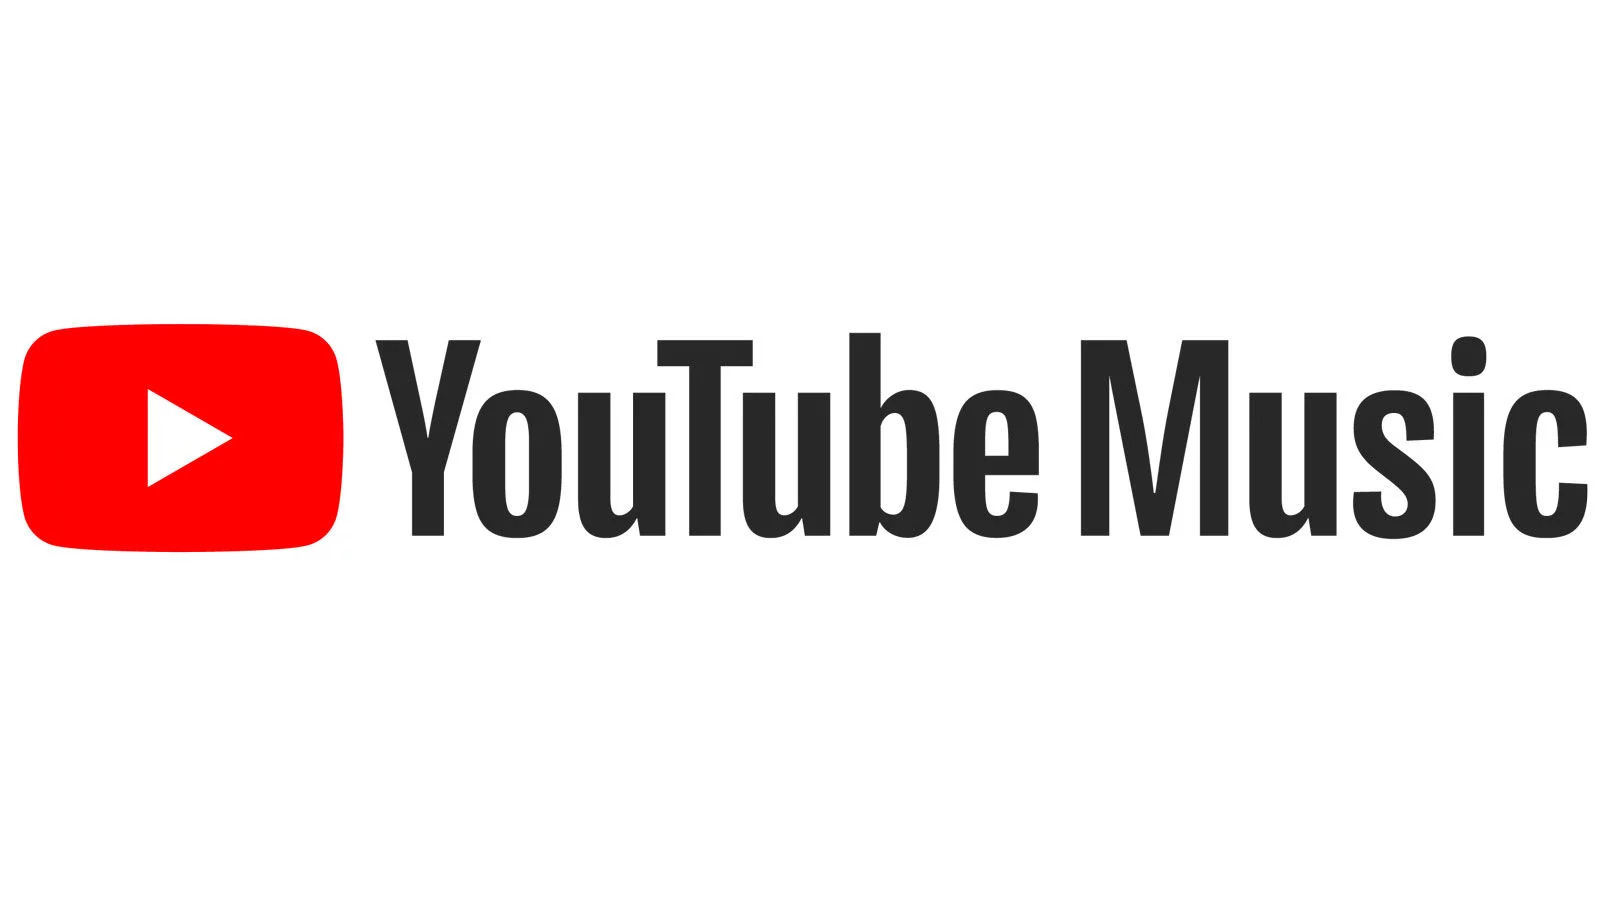 Зайди в ютуб песню. Значок ютуб Мьюзик. Логотип youtube Music PNG. Картинка для музыки на ютуб. Ютуб музыка иконка.